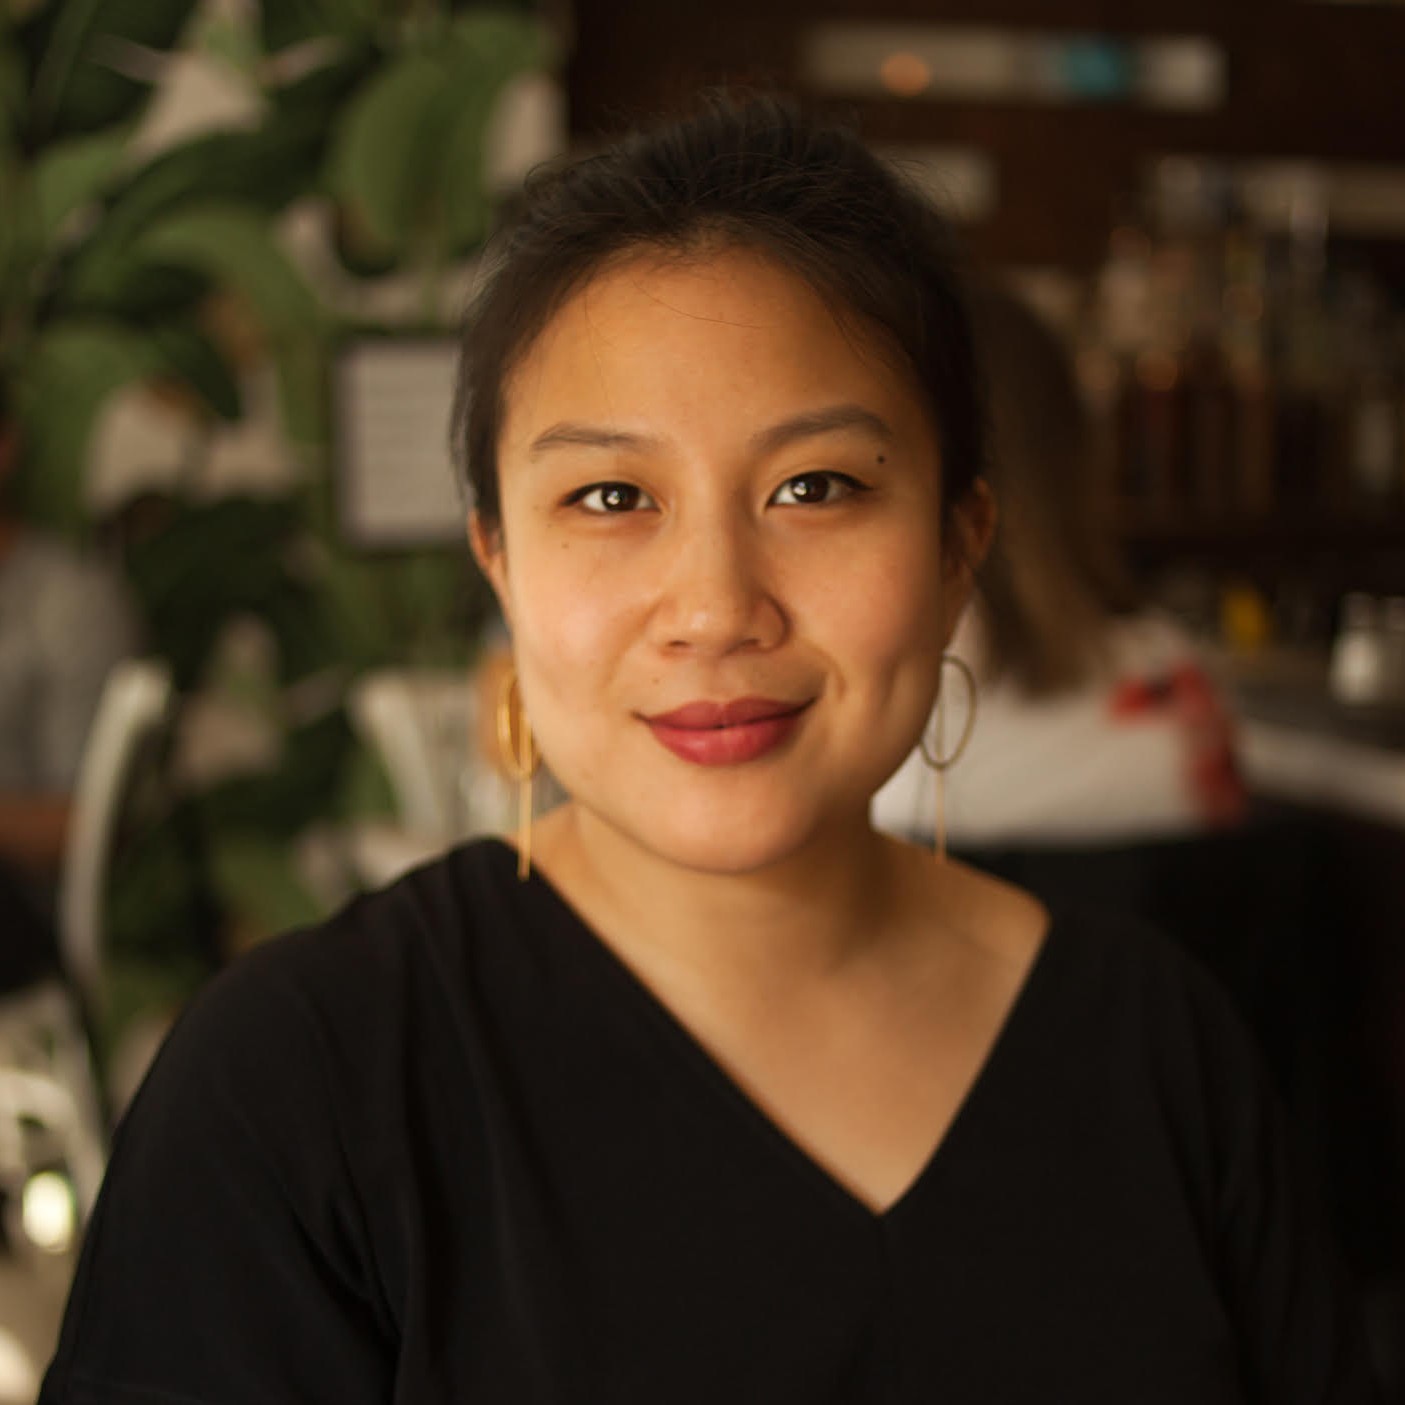 Angela Nguyen